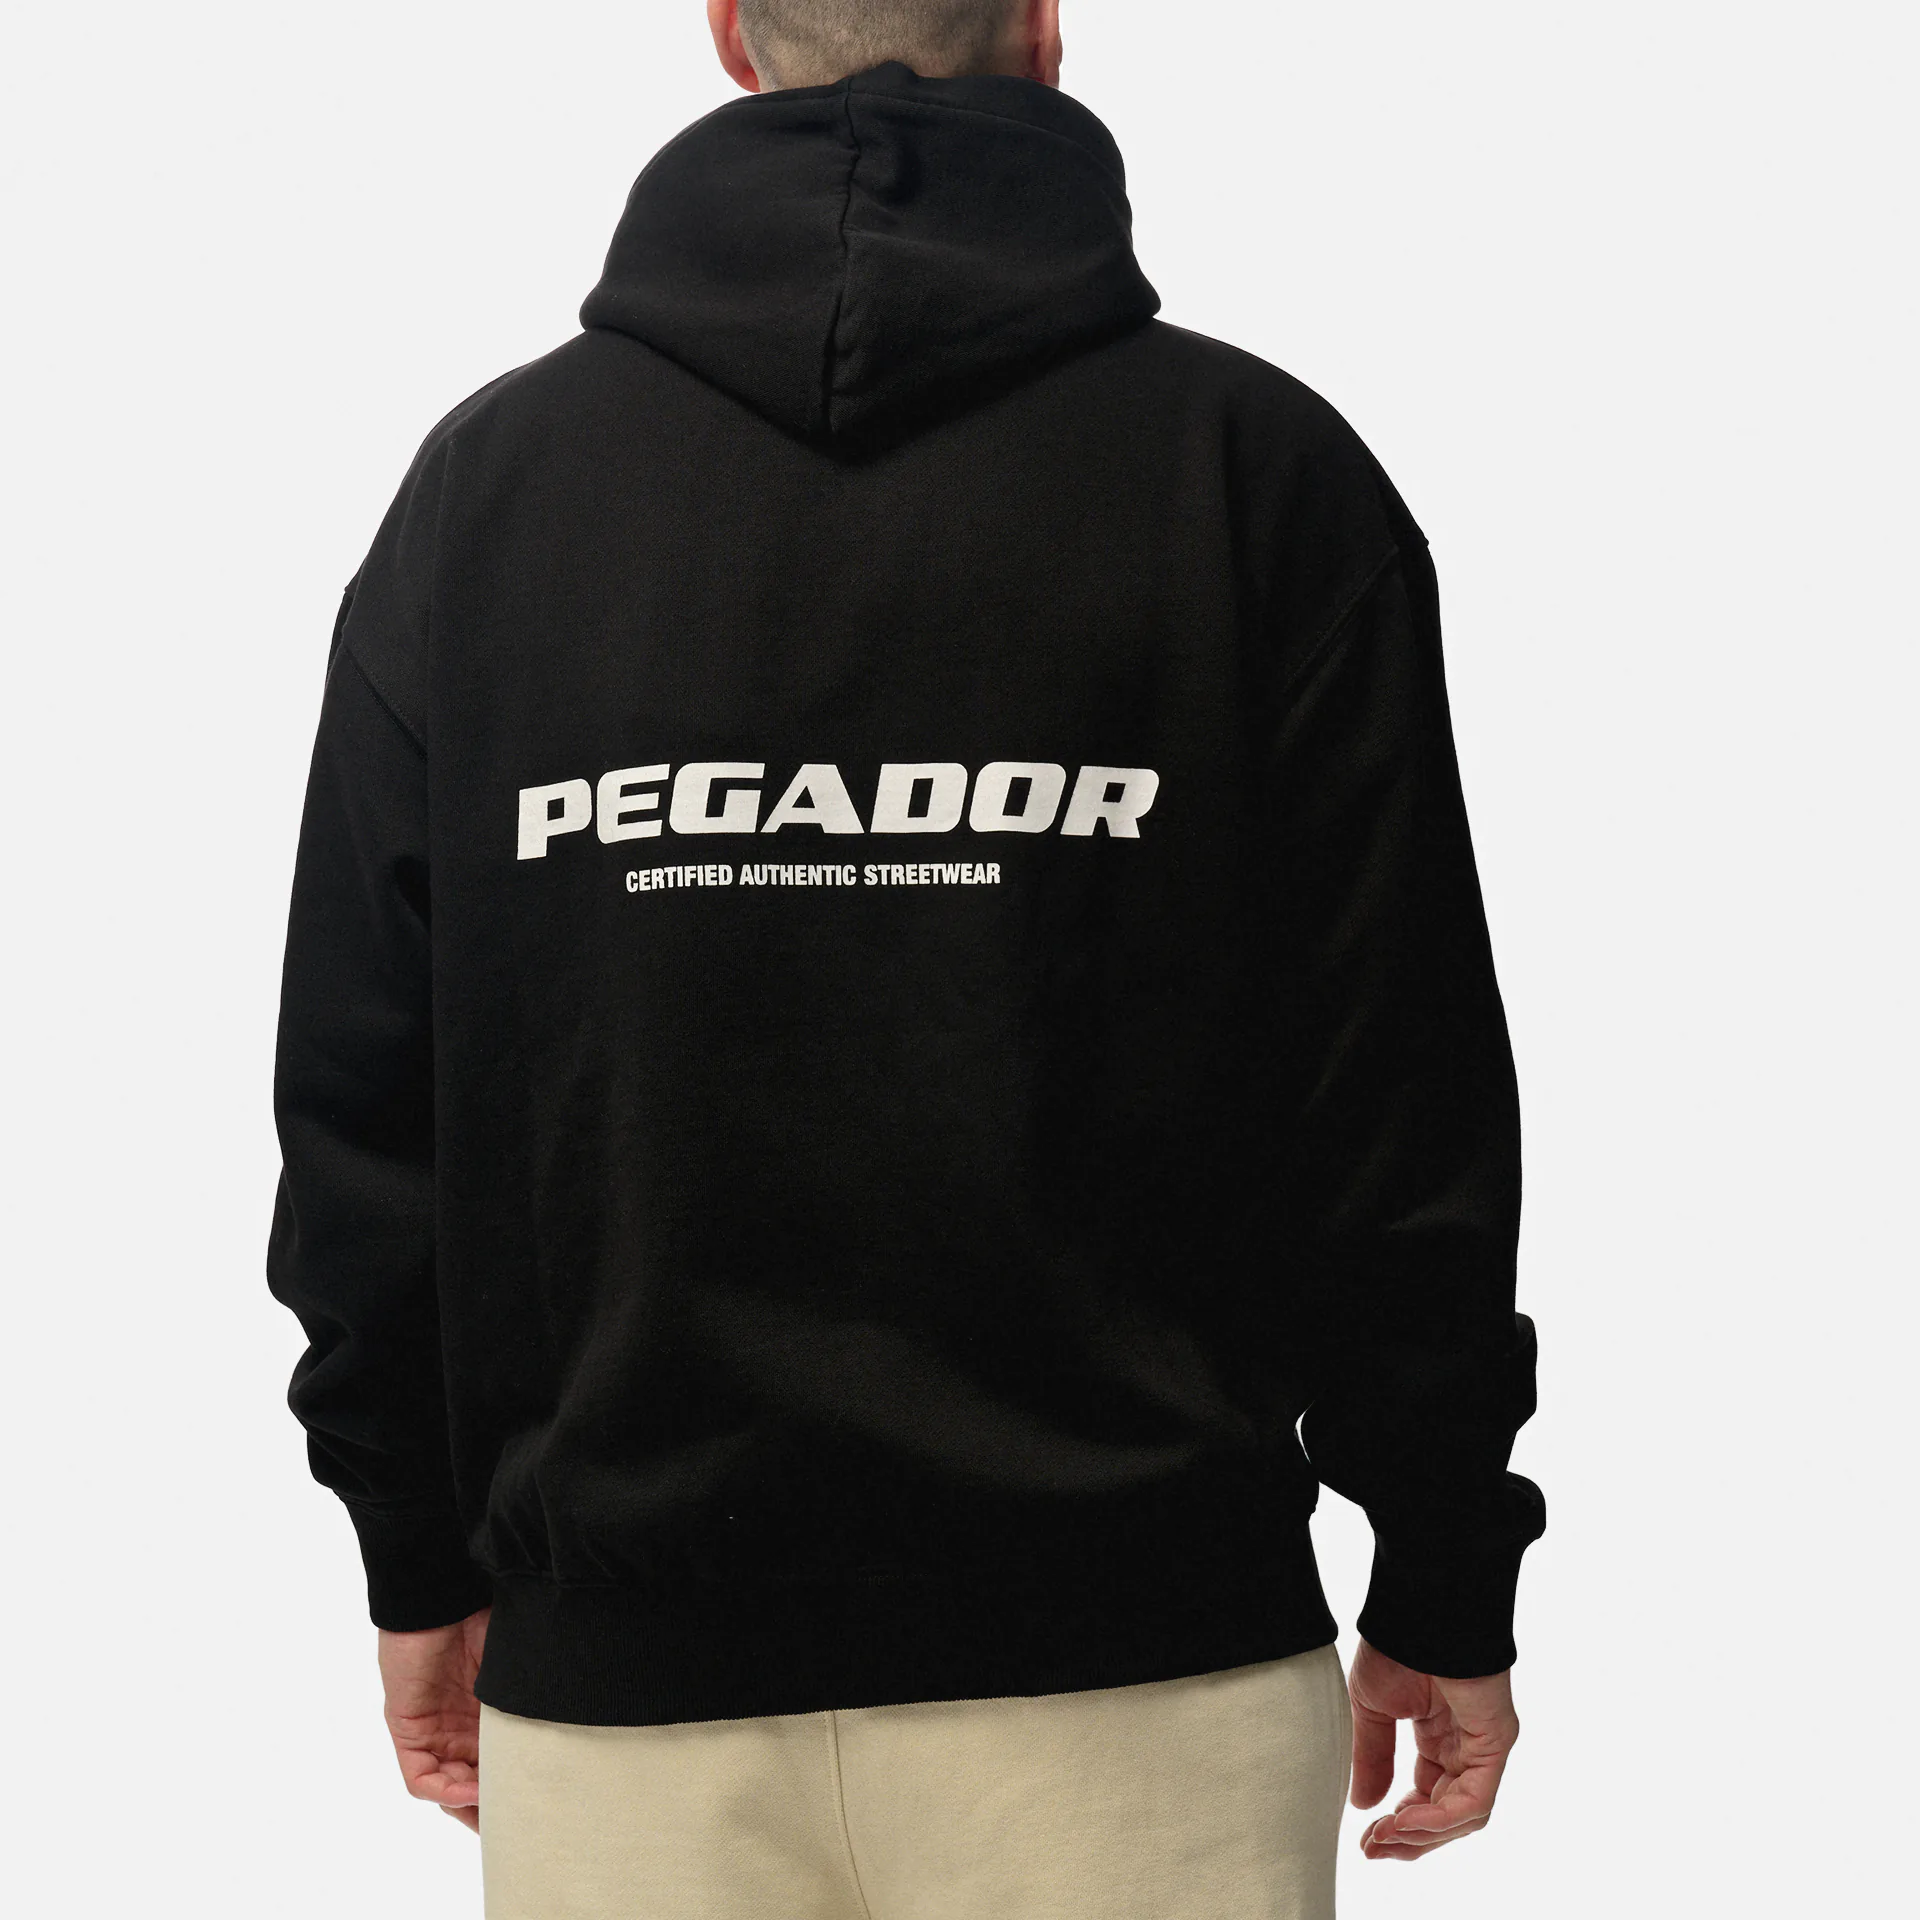 PEGADOR Colne Logo Oversized Sweat Jacket Washed Black